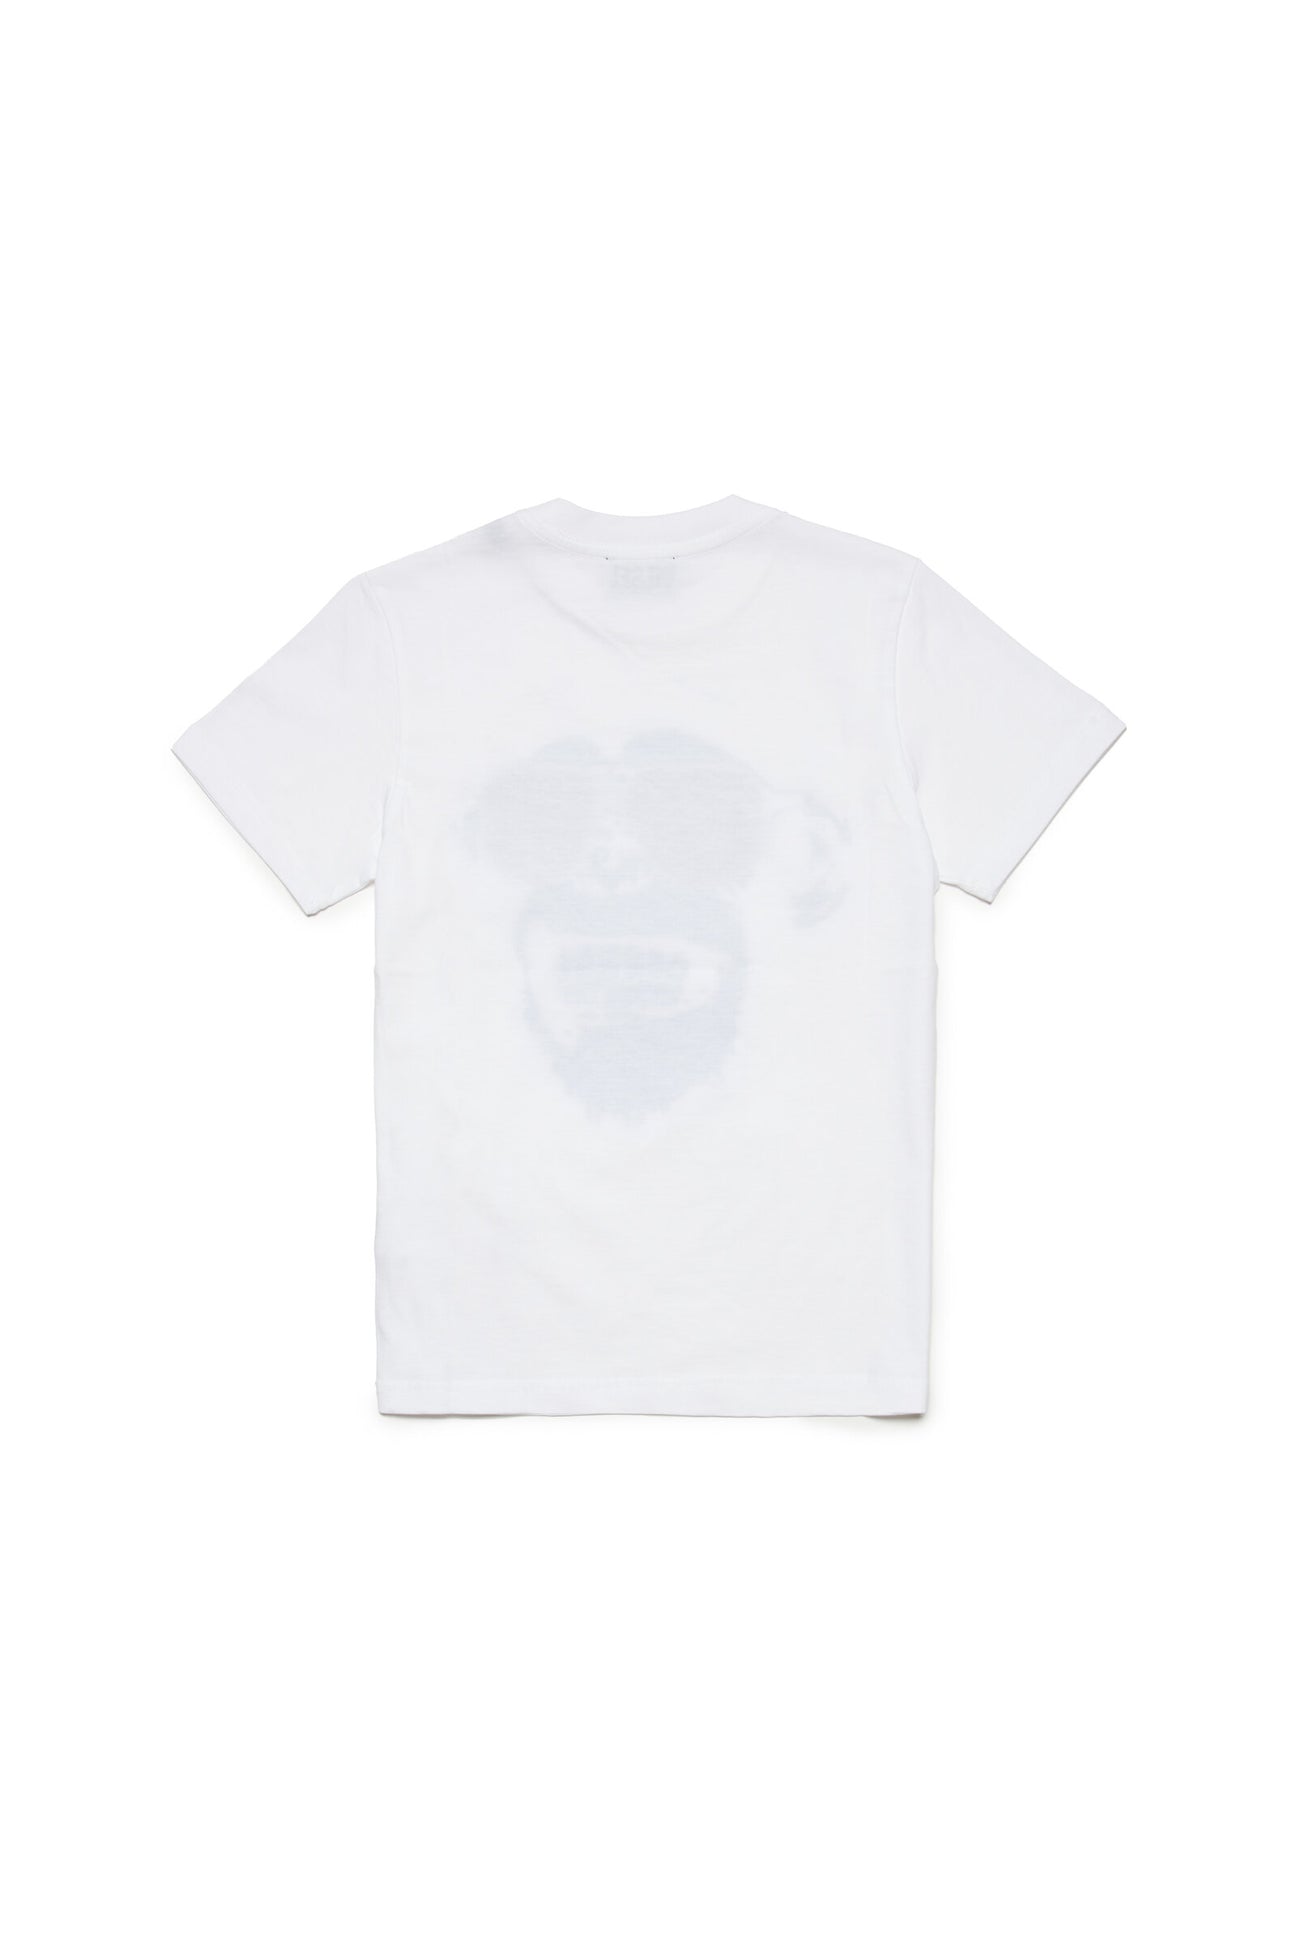 Camiseta blanca con estampado Monkey de efecto metálico Camiseta blanca con estampado Monkey de efecto metálico